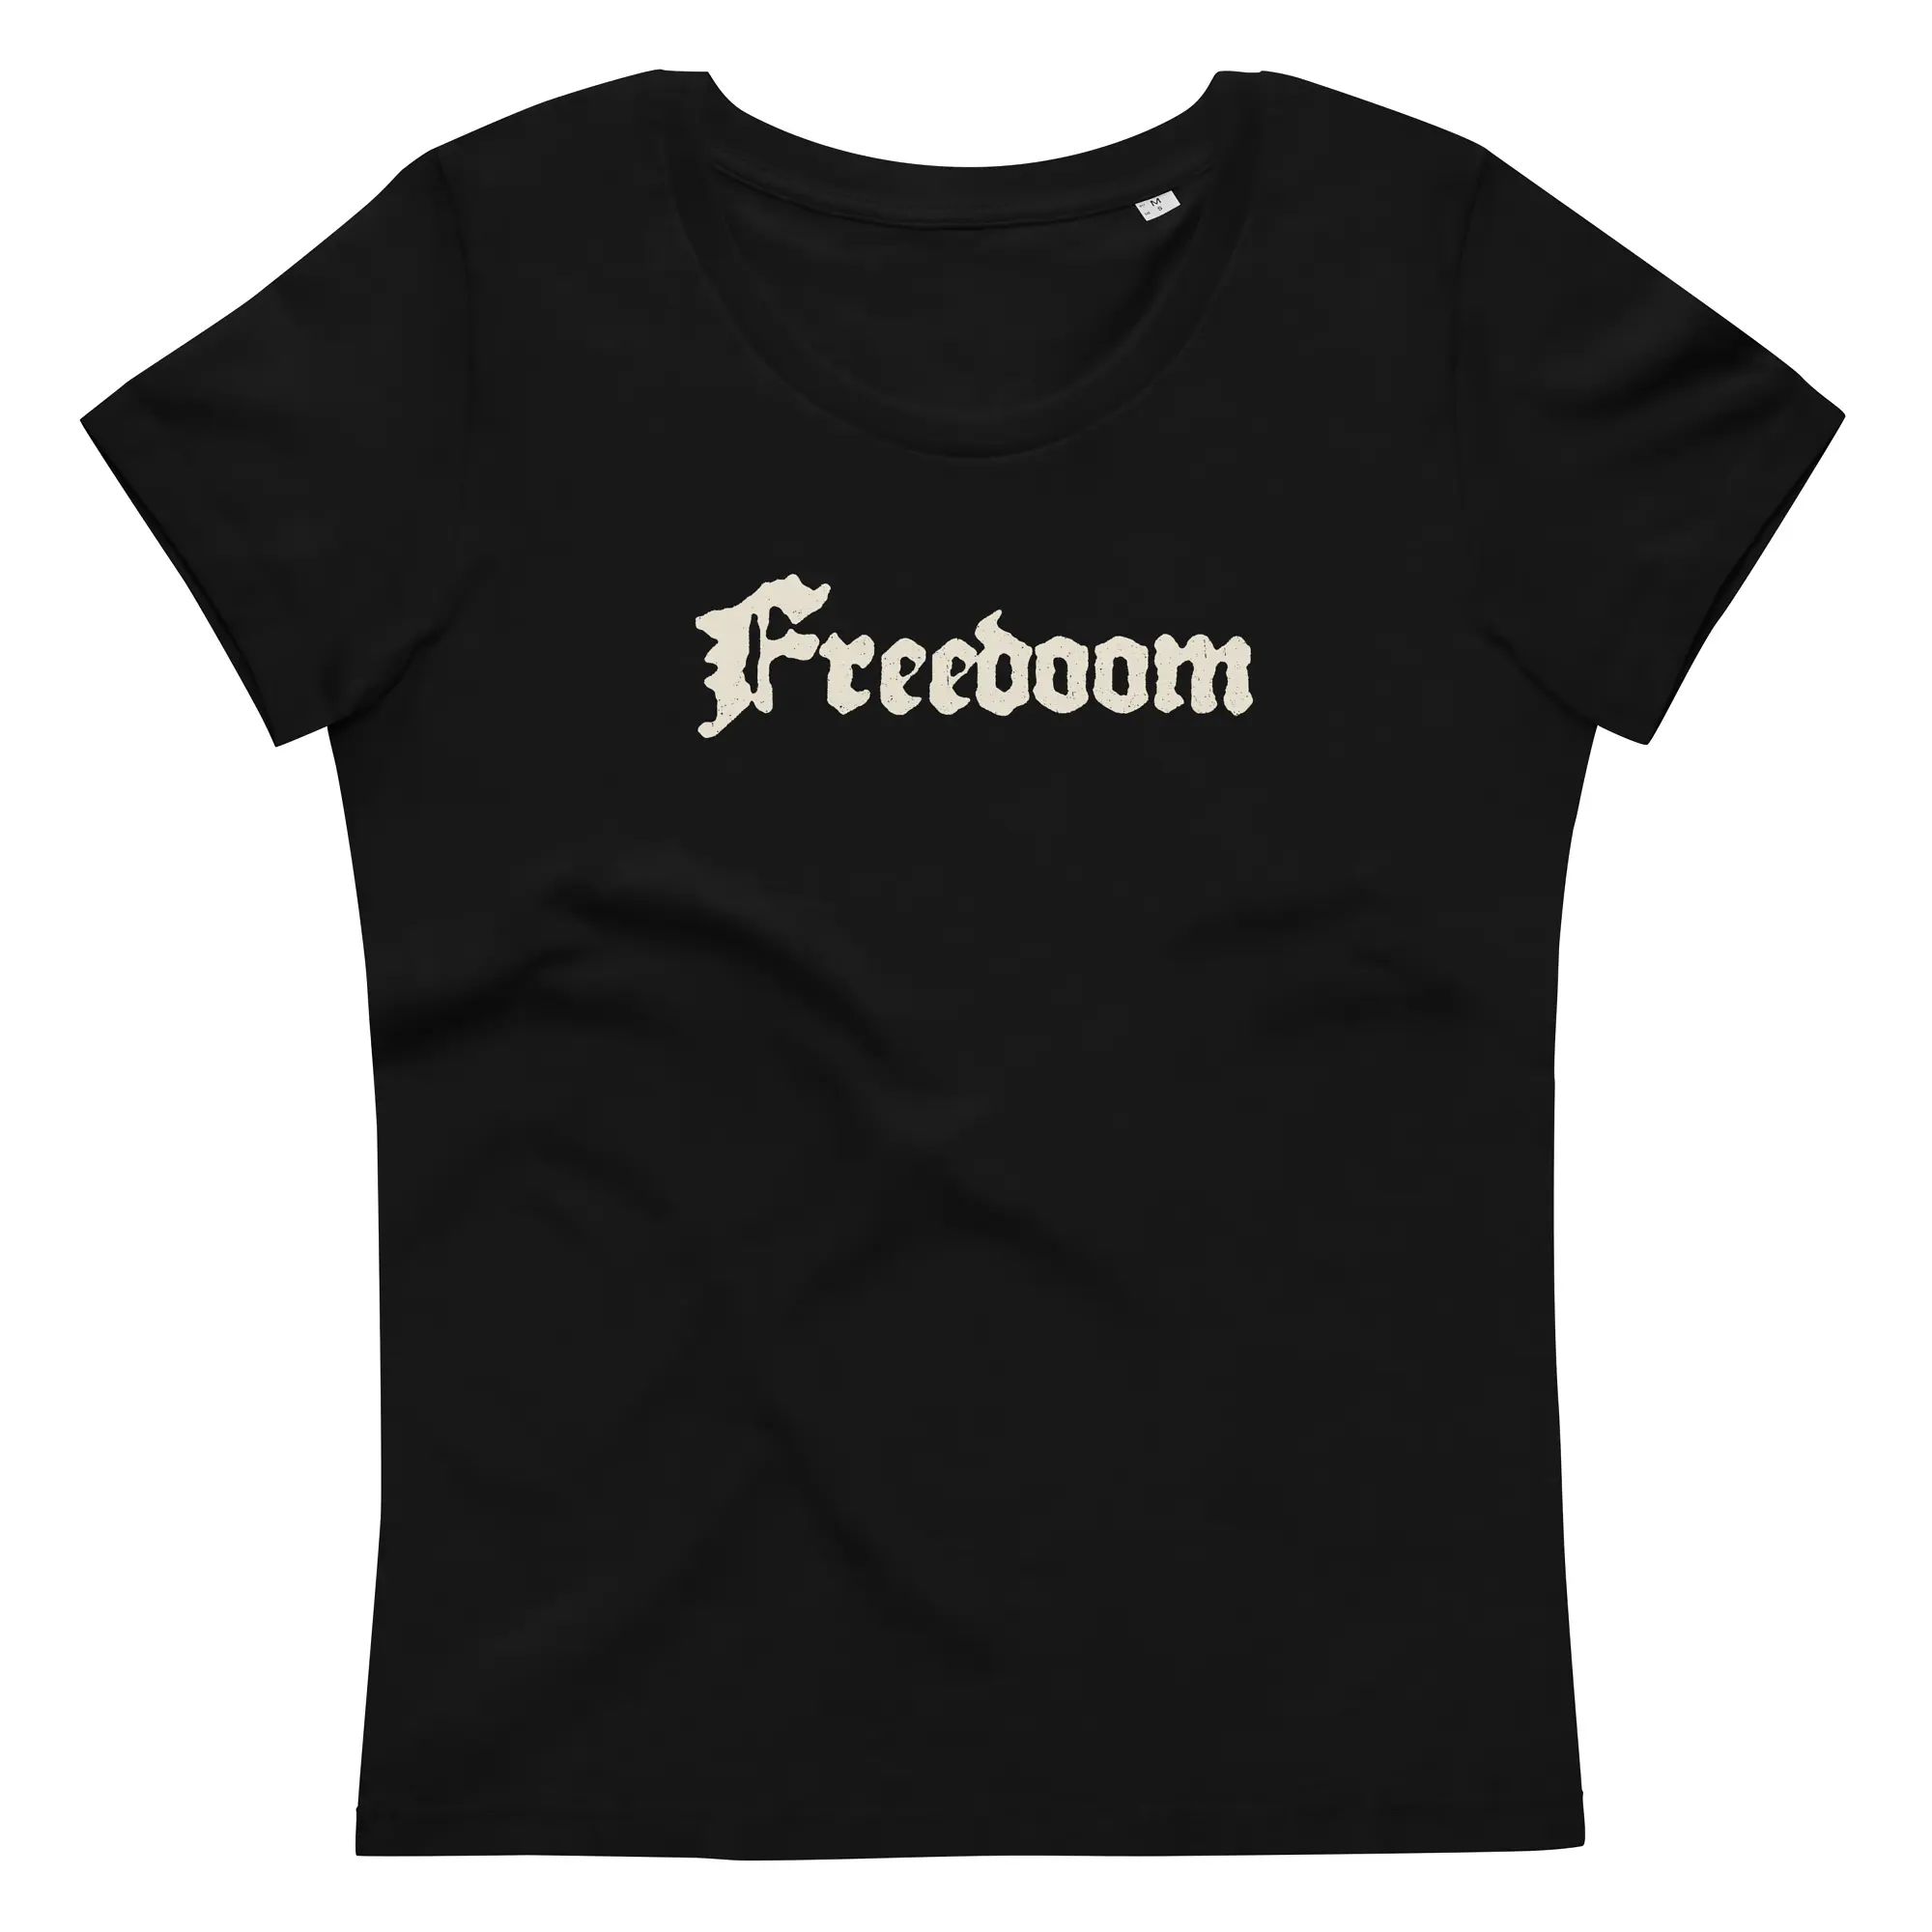 Freedoom